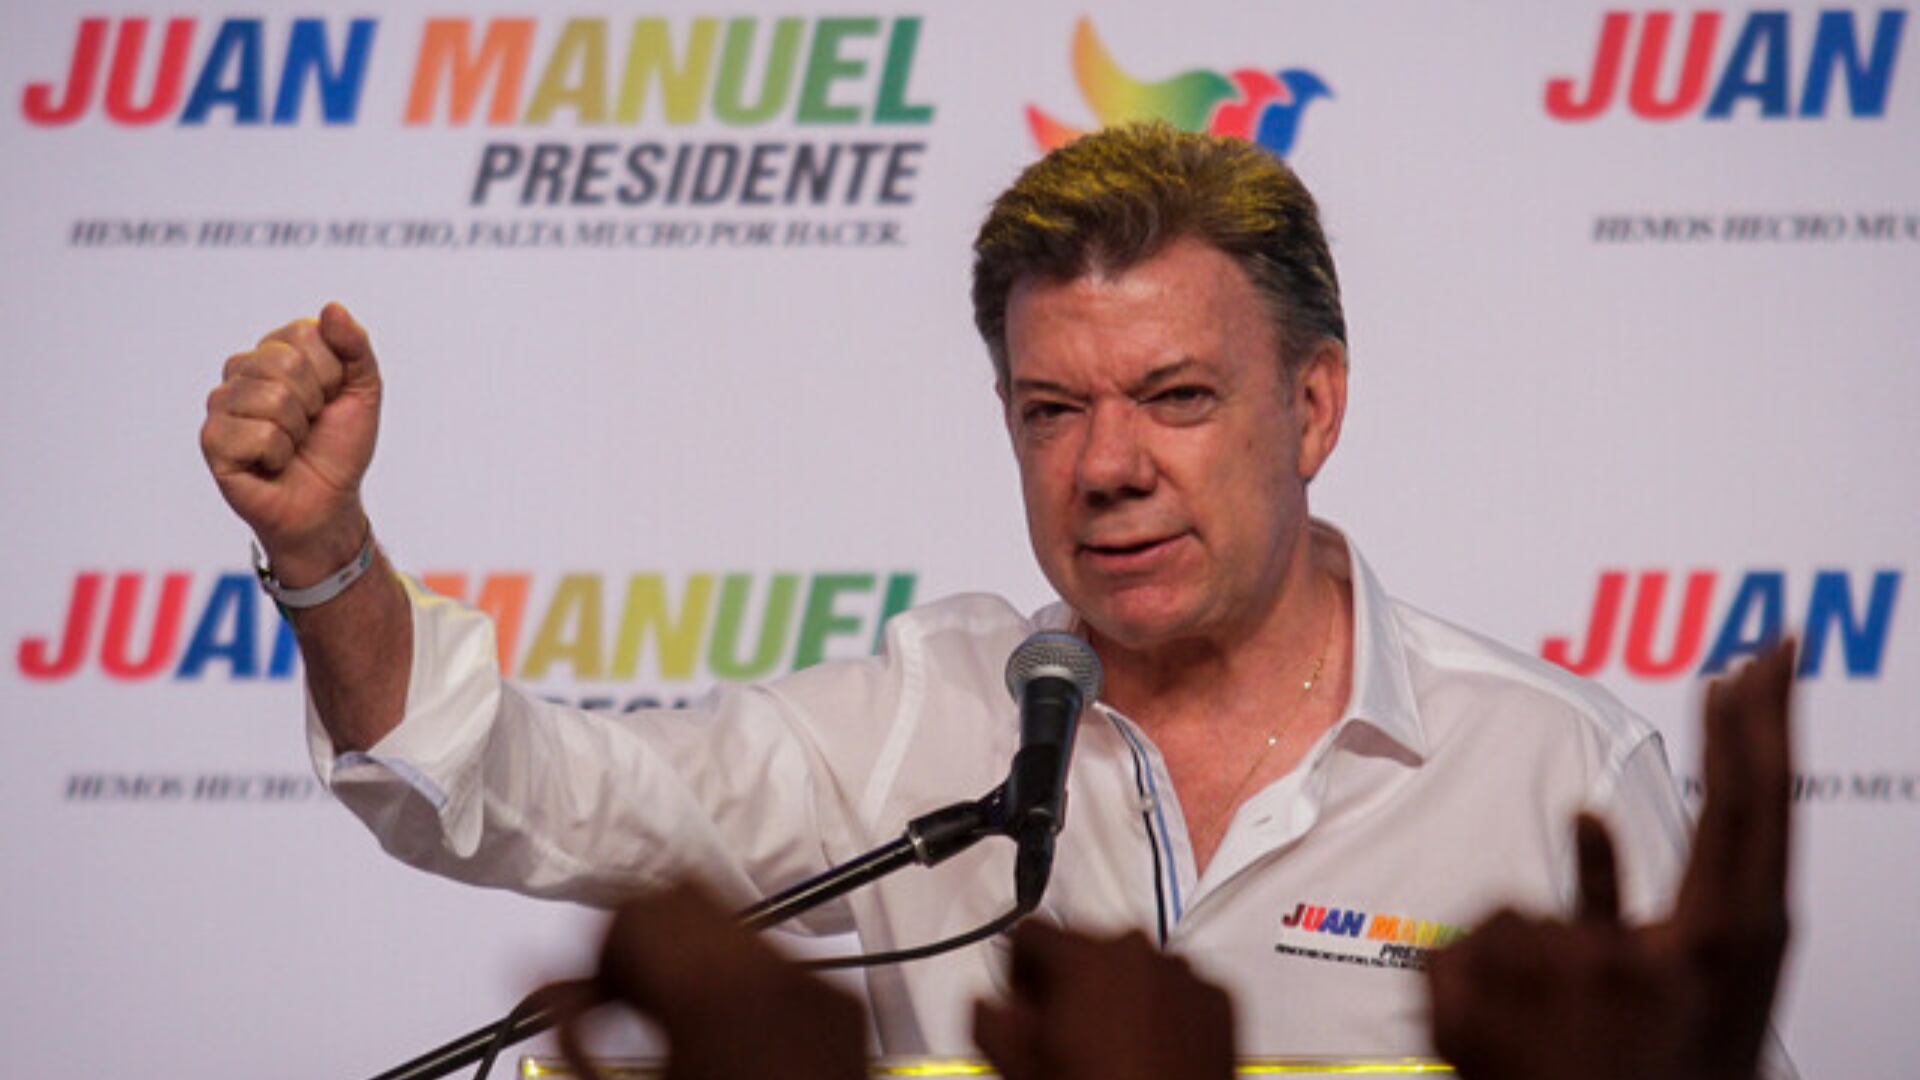 La campaña del expresidente Juan Manuel Santos está siendo investigada por la Fiscalía por los presuntos dineros de Odebrecht - crédito Mauricio Alvarado/Colprensa